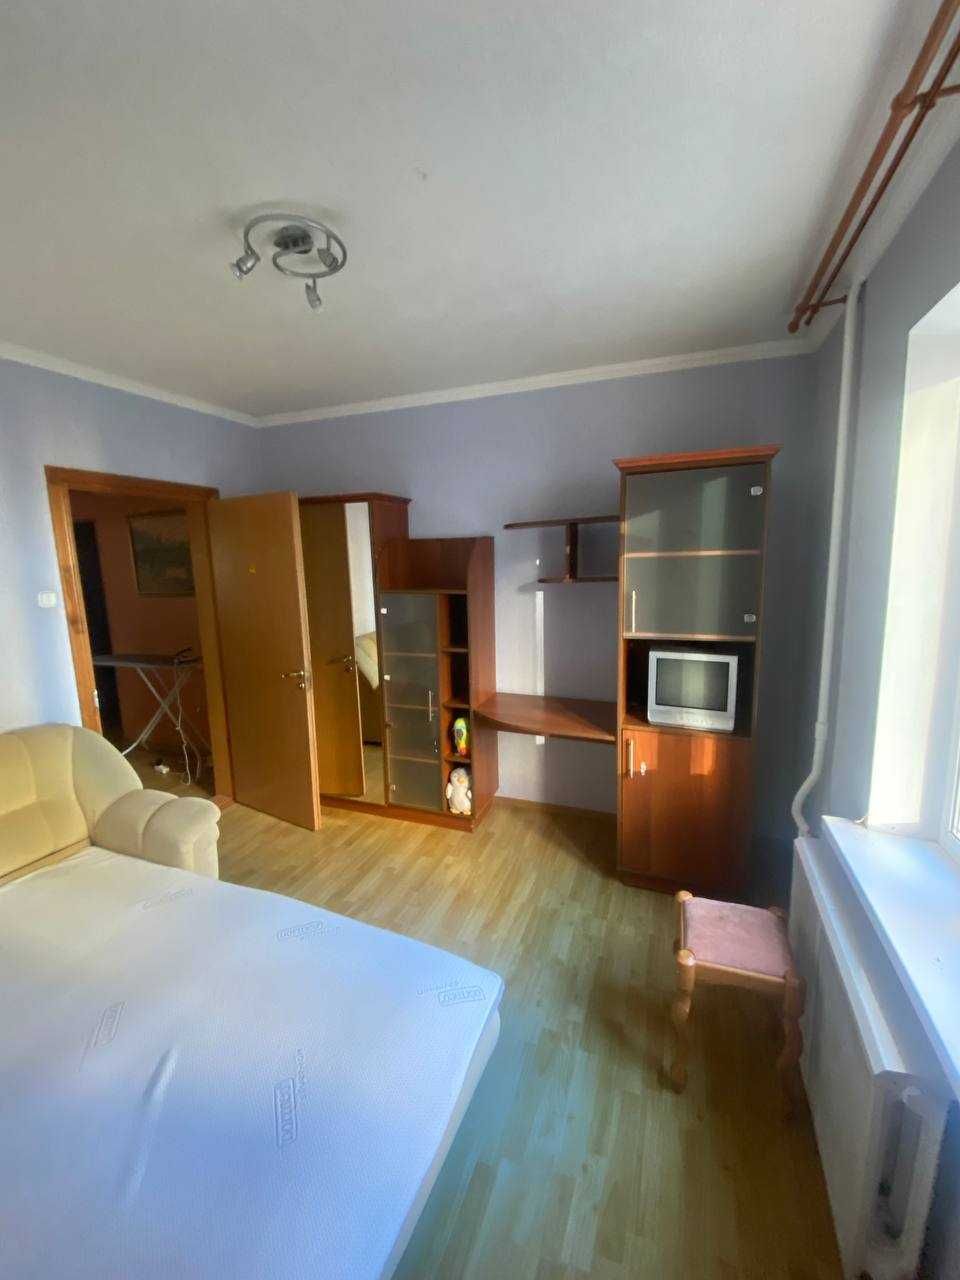 Оренда кімнати в 3 кімнатній квартирі (Здановської 83 А) ВДНХ-ІПОДРОМ